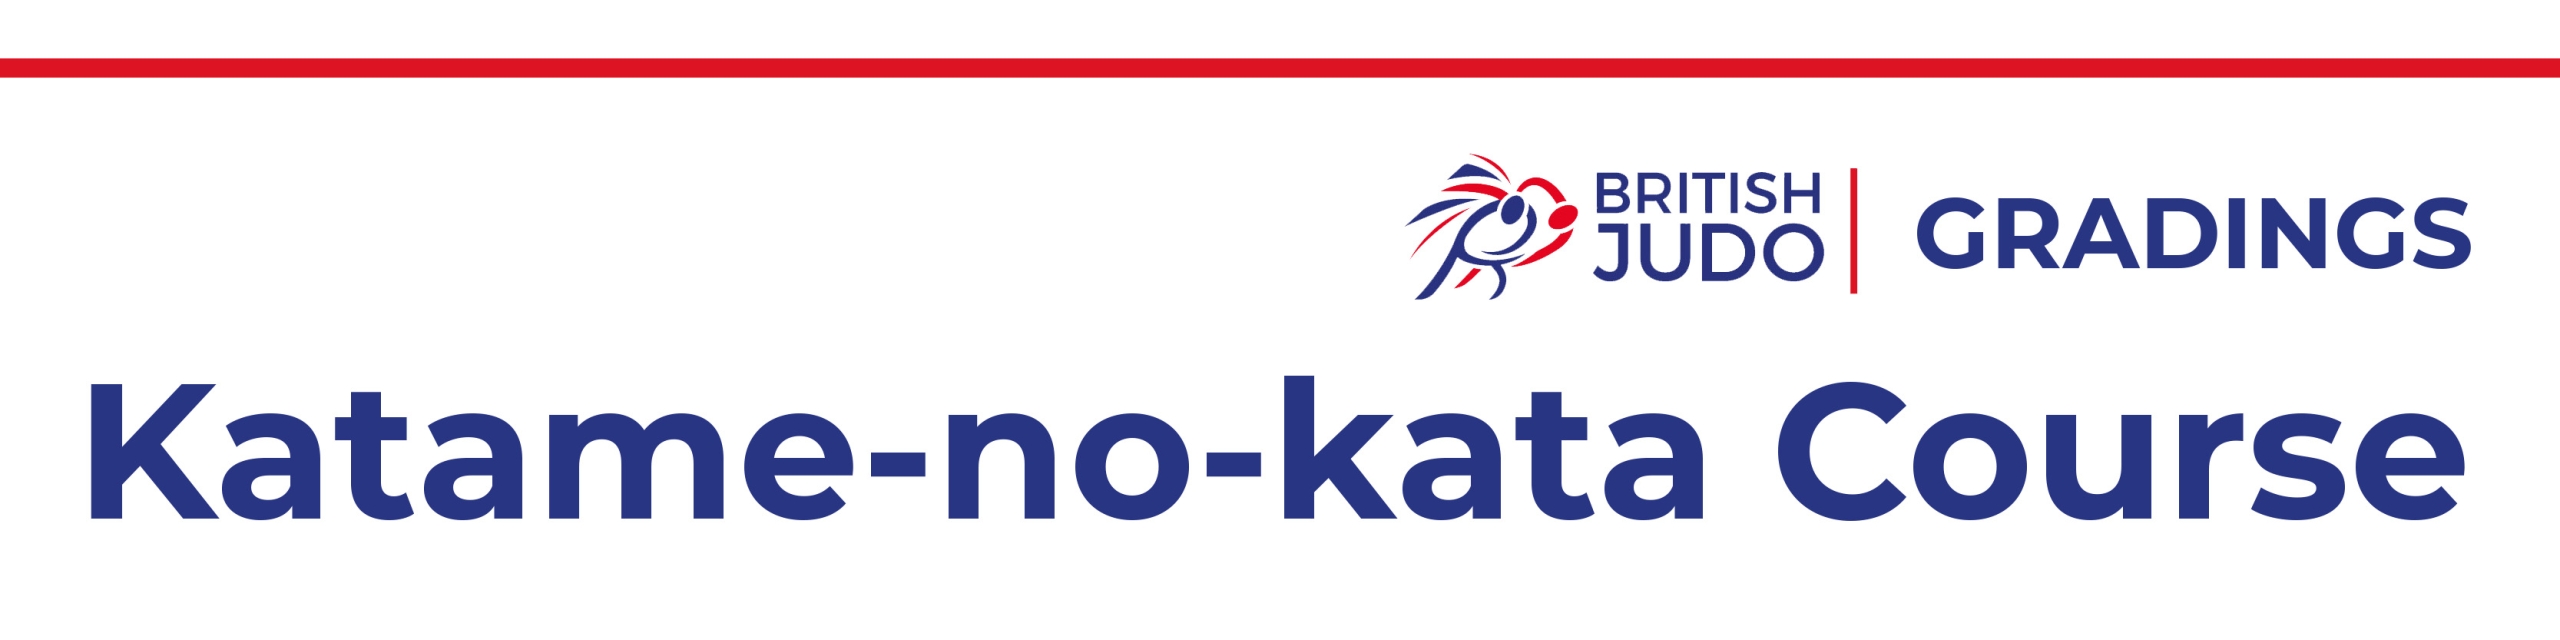 Katame-no-kata course